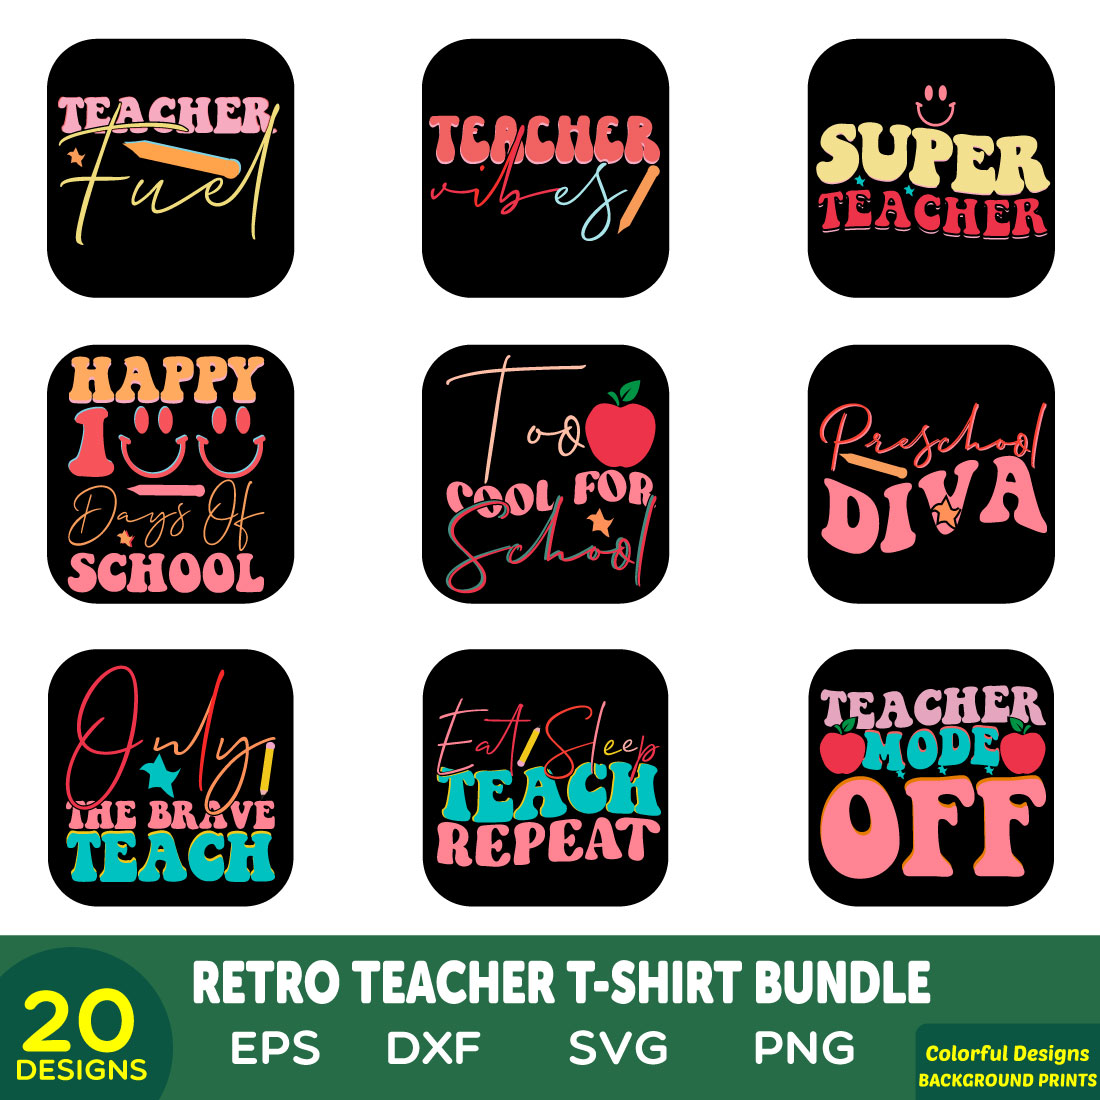 retro teacher t-shirt bundle cover image.